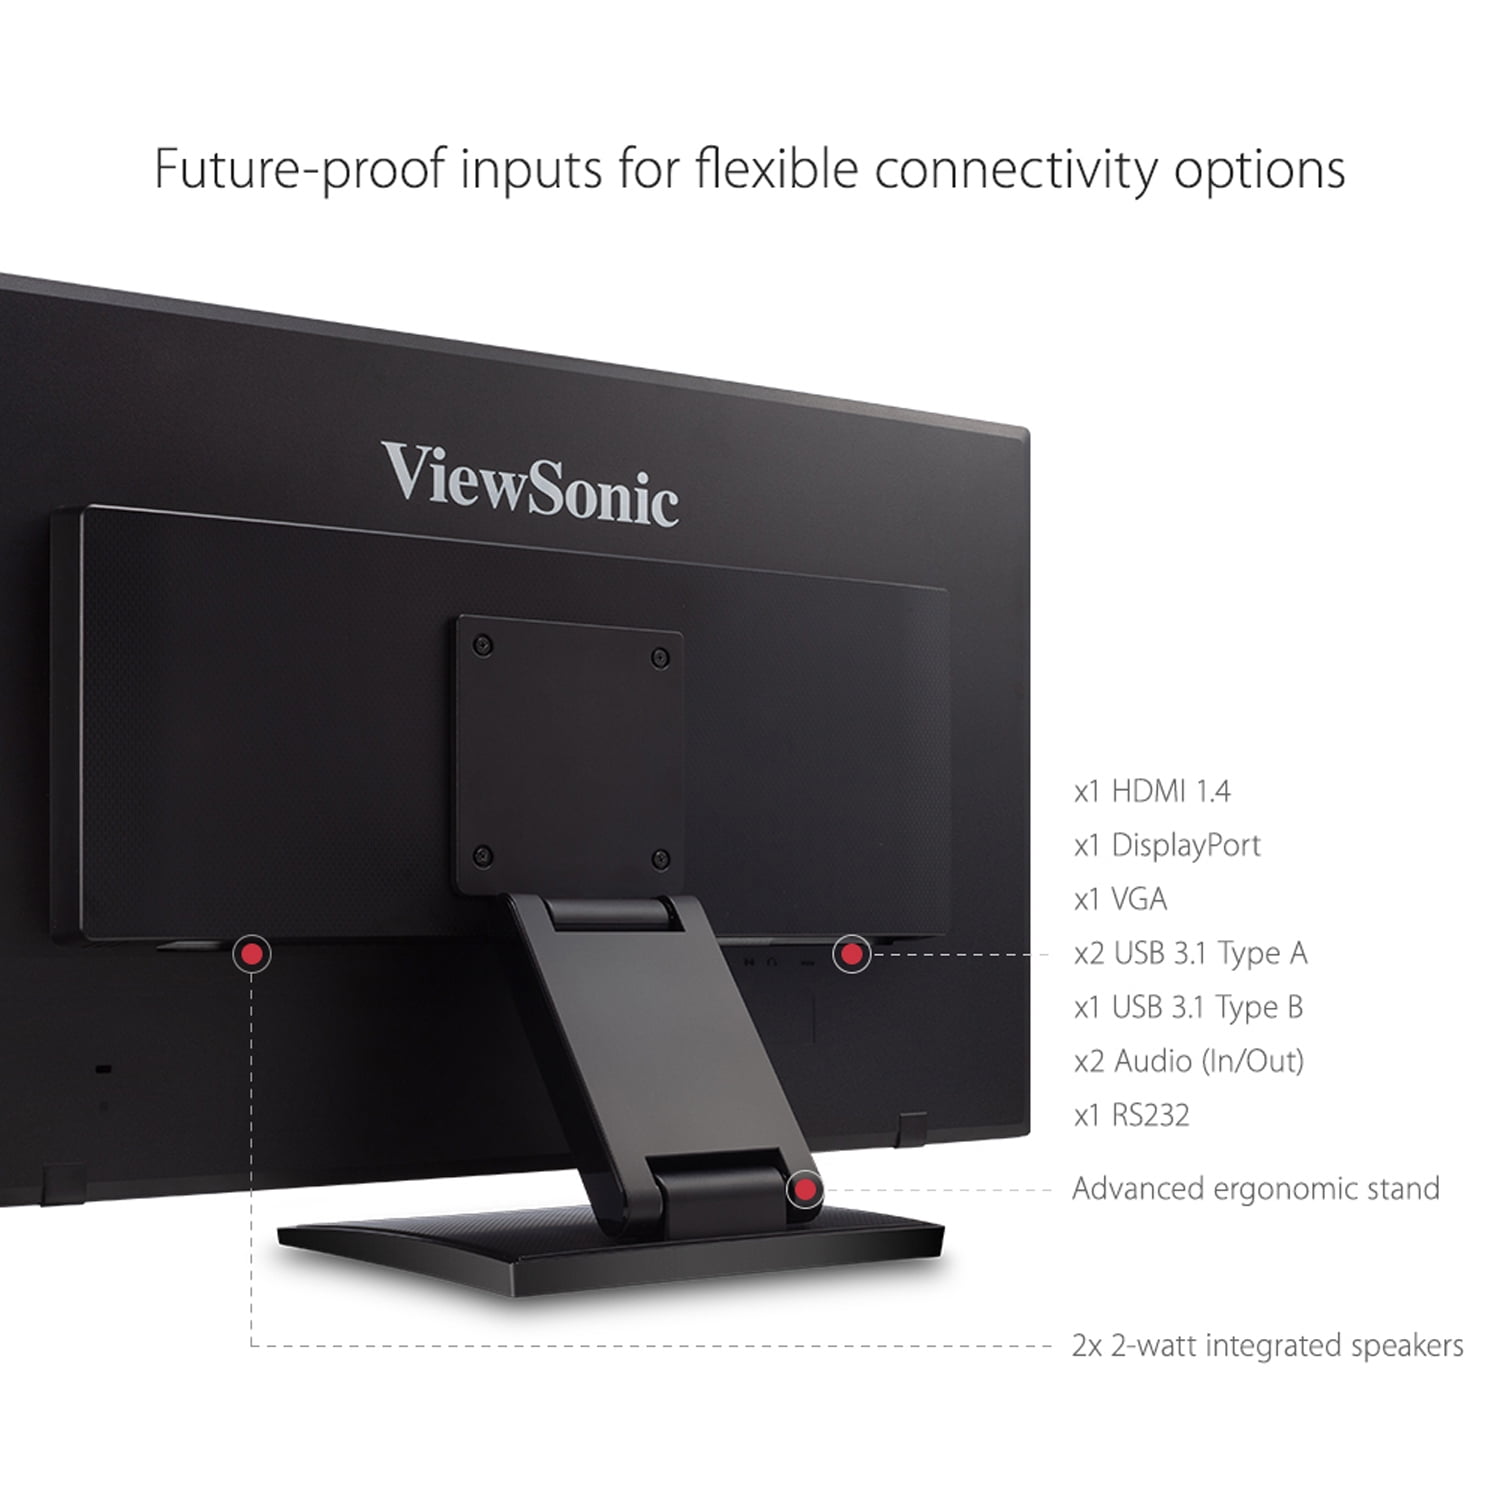 ViewSonic TD2455 Monitor de pantalla táctil multitáctil IPS de 24 pulgadas  1080p IPS de 10 puntos con ergonomía avanzada de doble bisagra USB C HDMI y